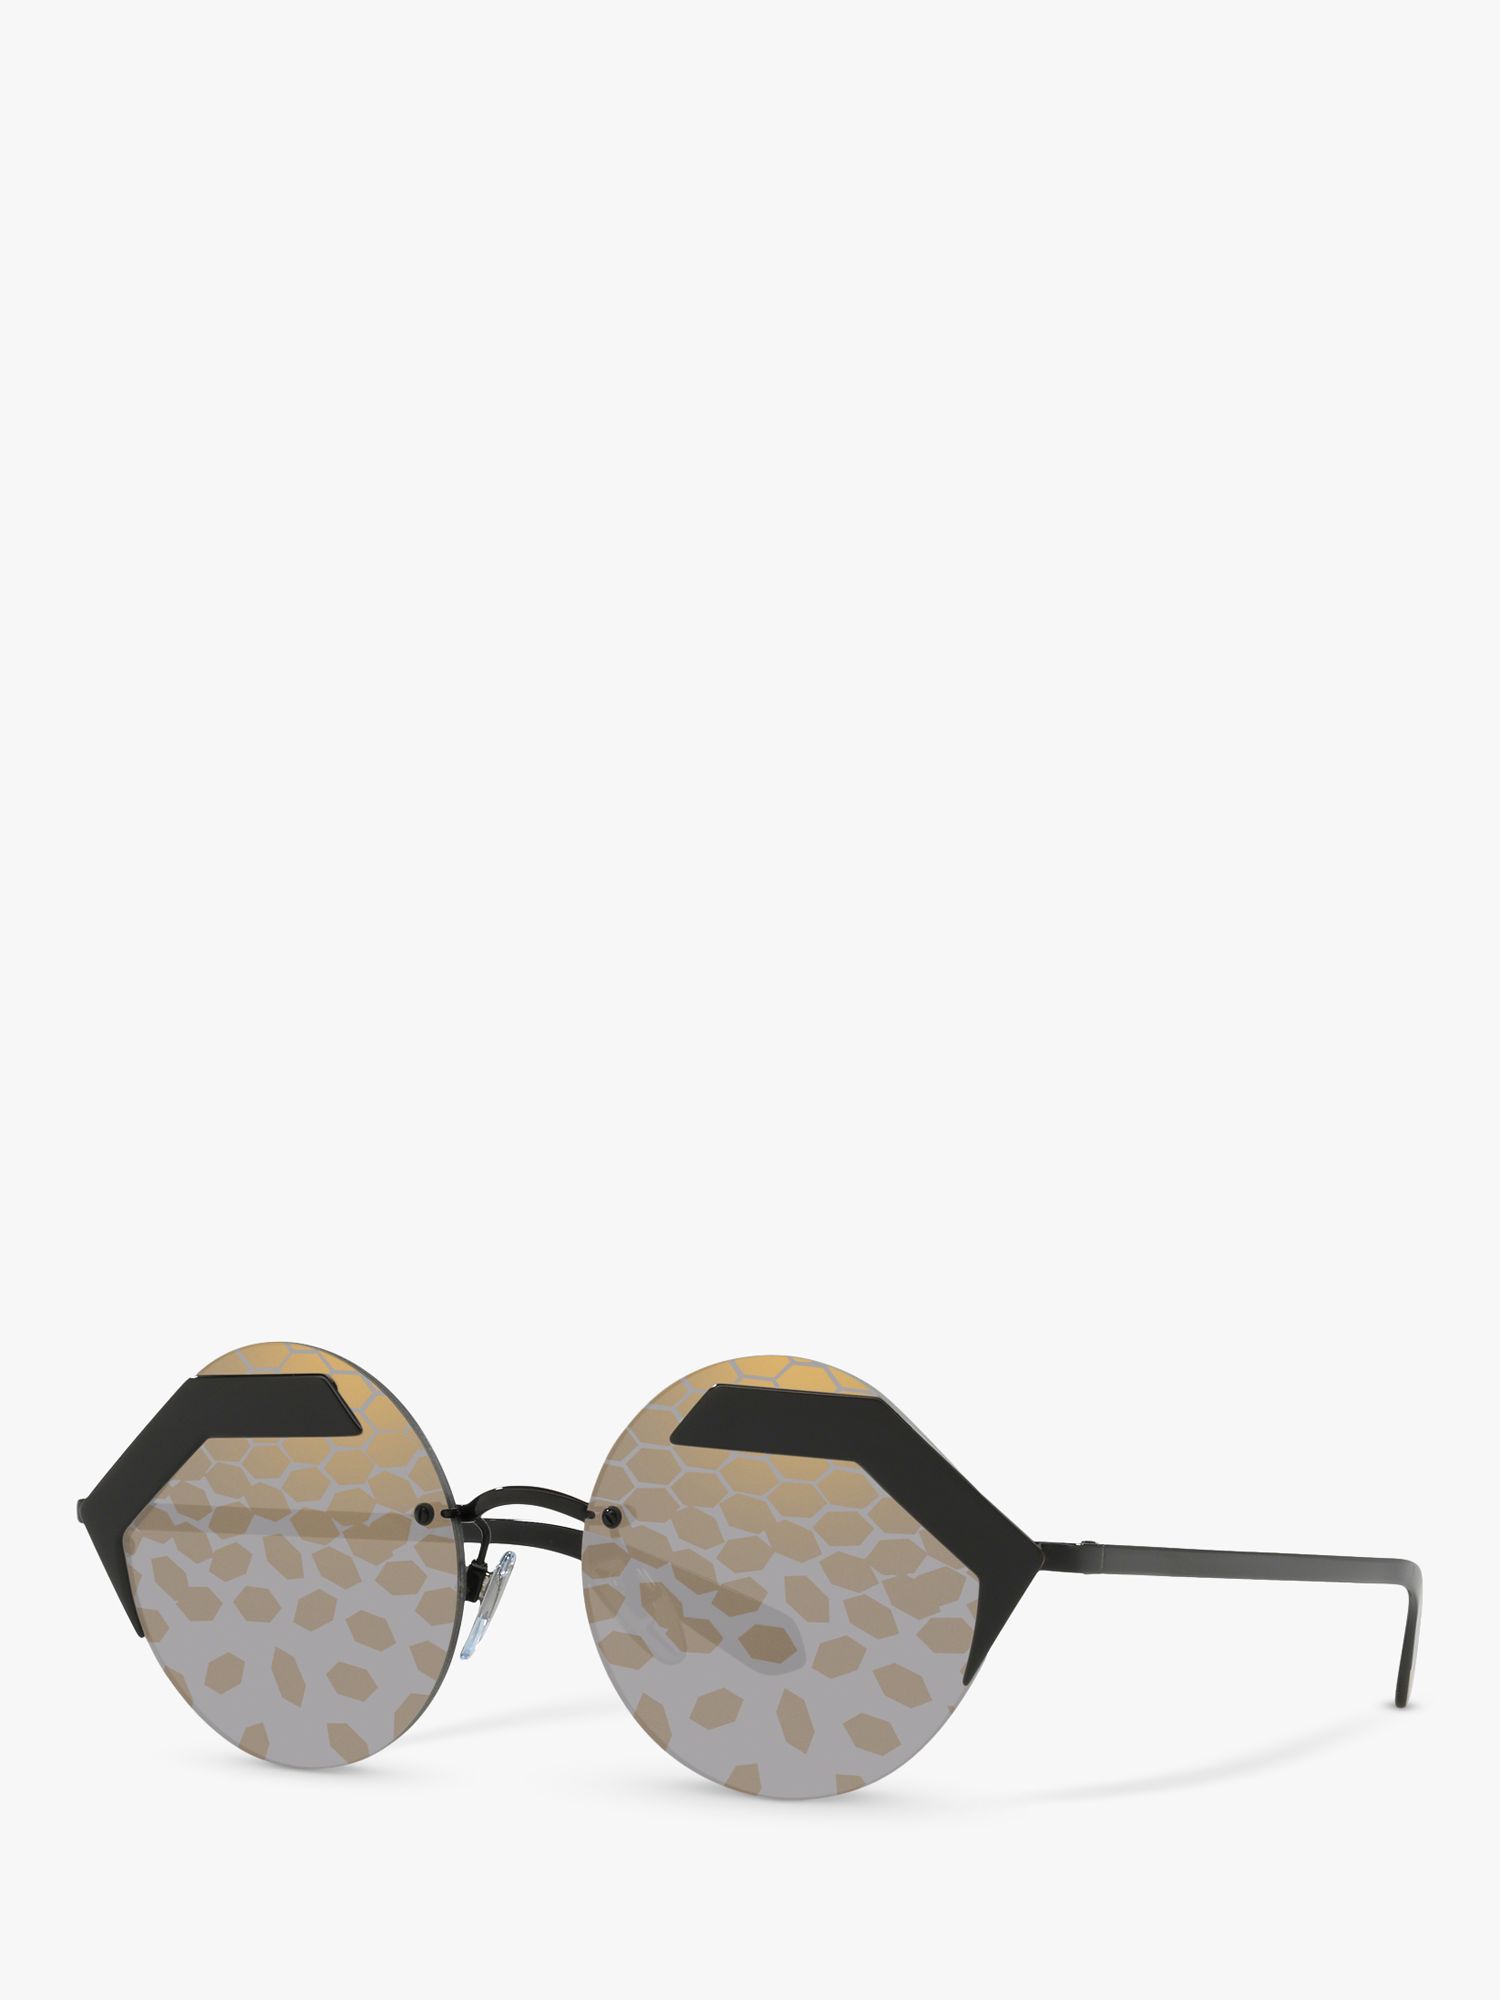 BVLGARI BV6089 Круглые солнцезащитные очки, черный/серебристый мульти цена и фото